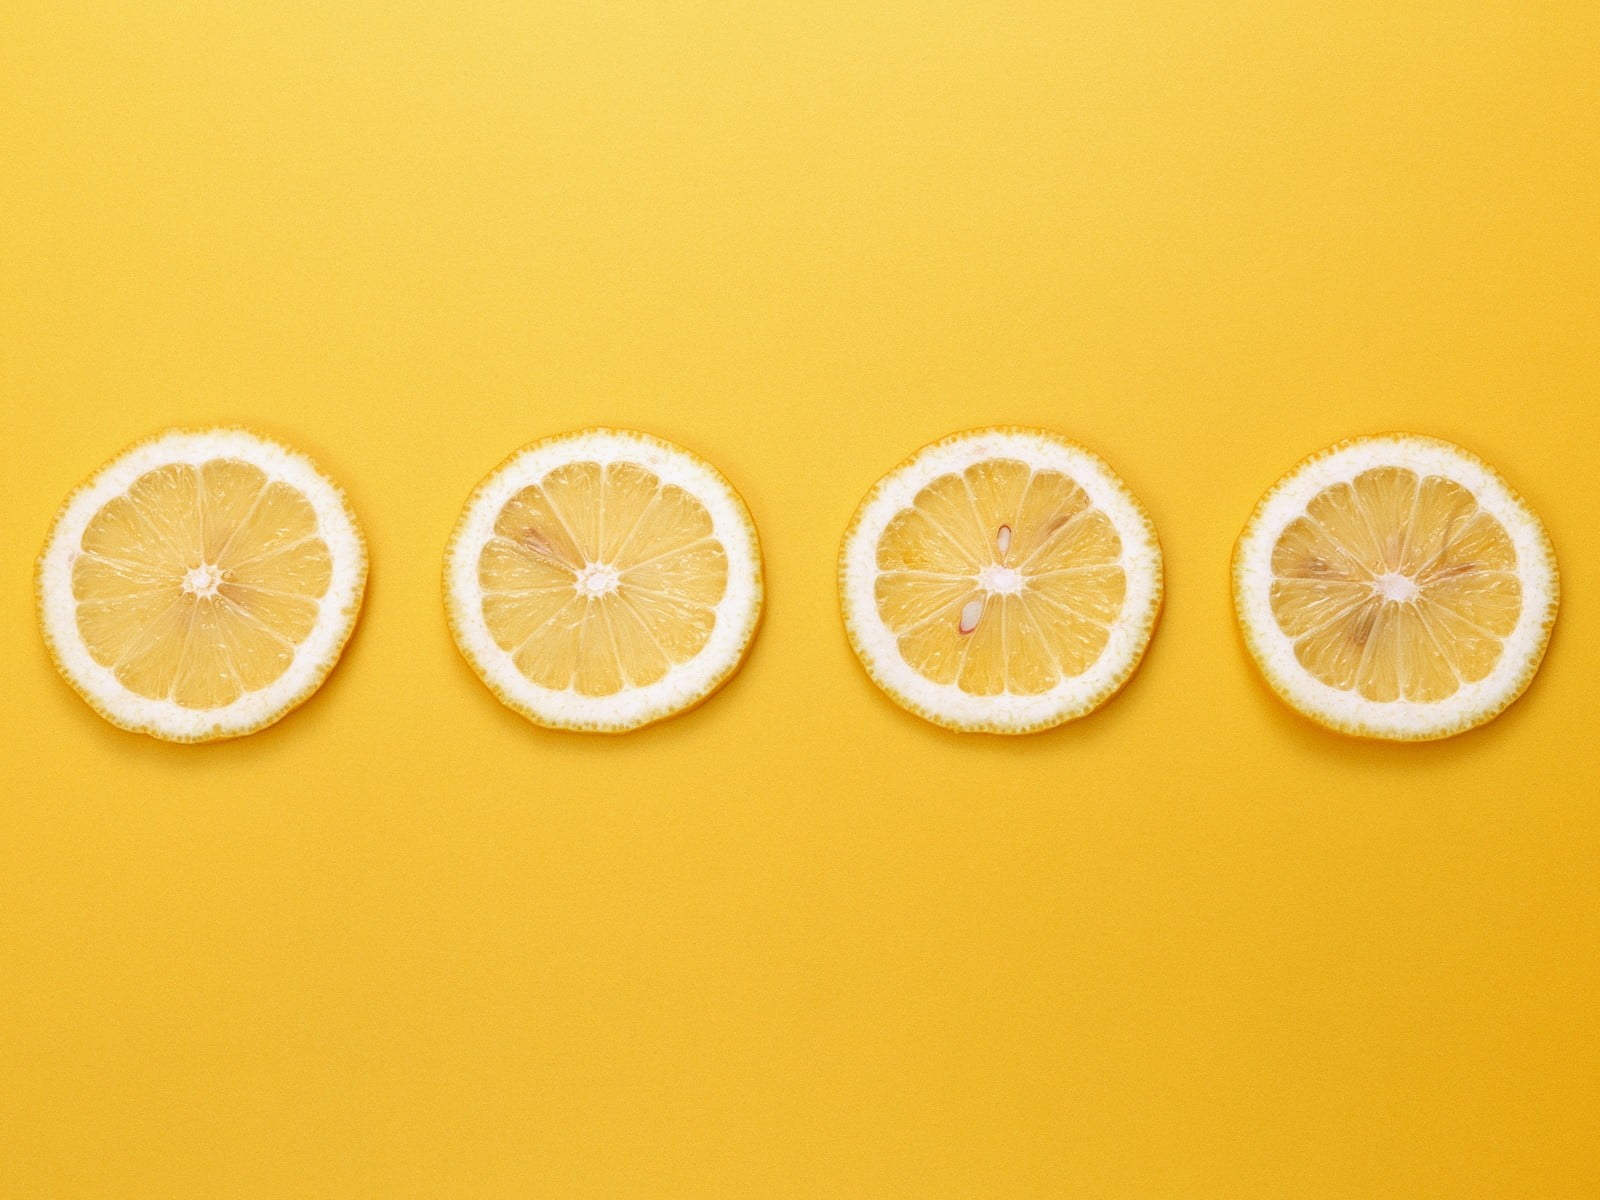 four slices of citrus fruit, yellow background, lemons, minimalism